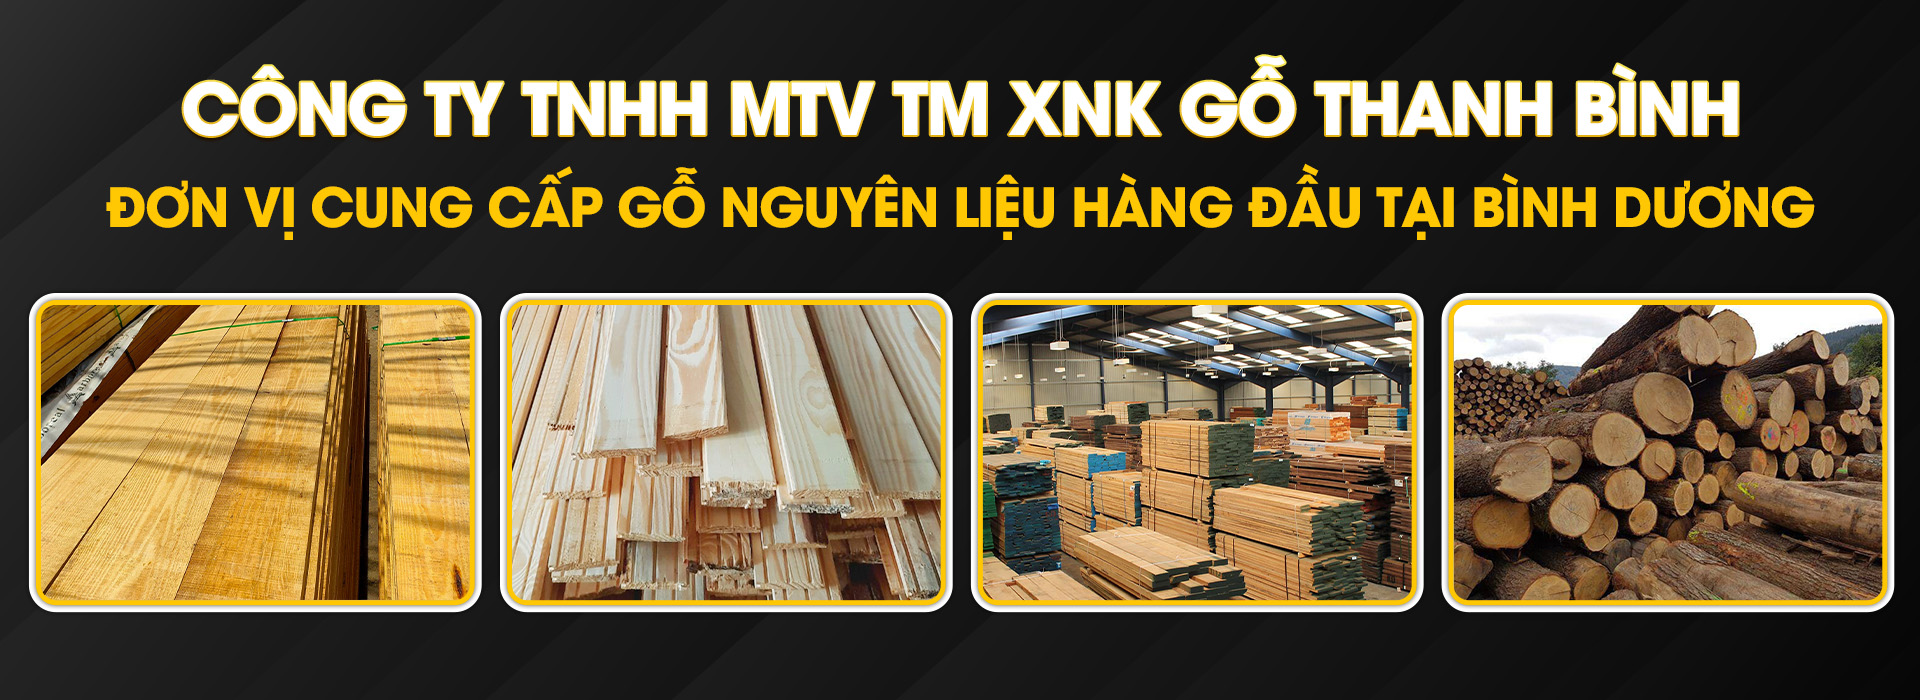 CÔNG TY TNHH MTV TM XNK GỖ THANH BÌNH